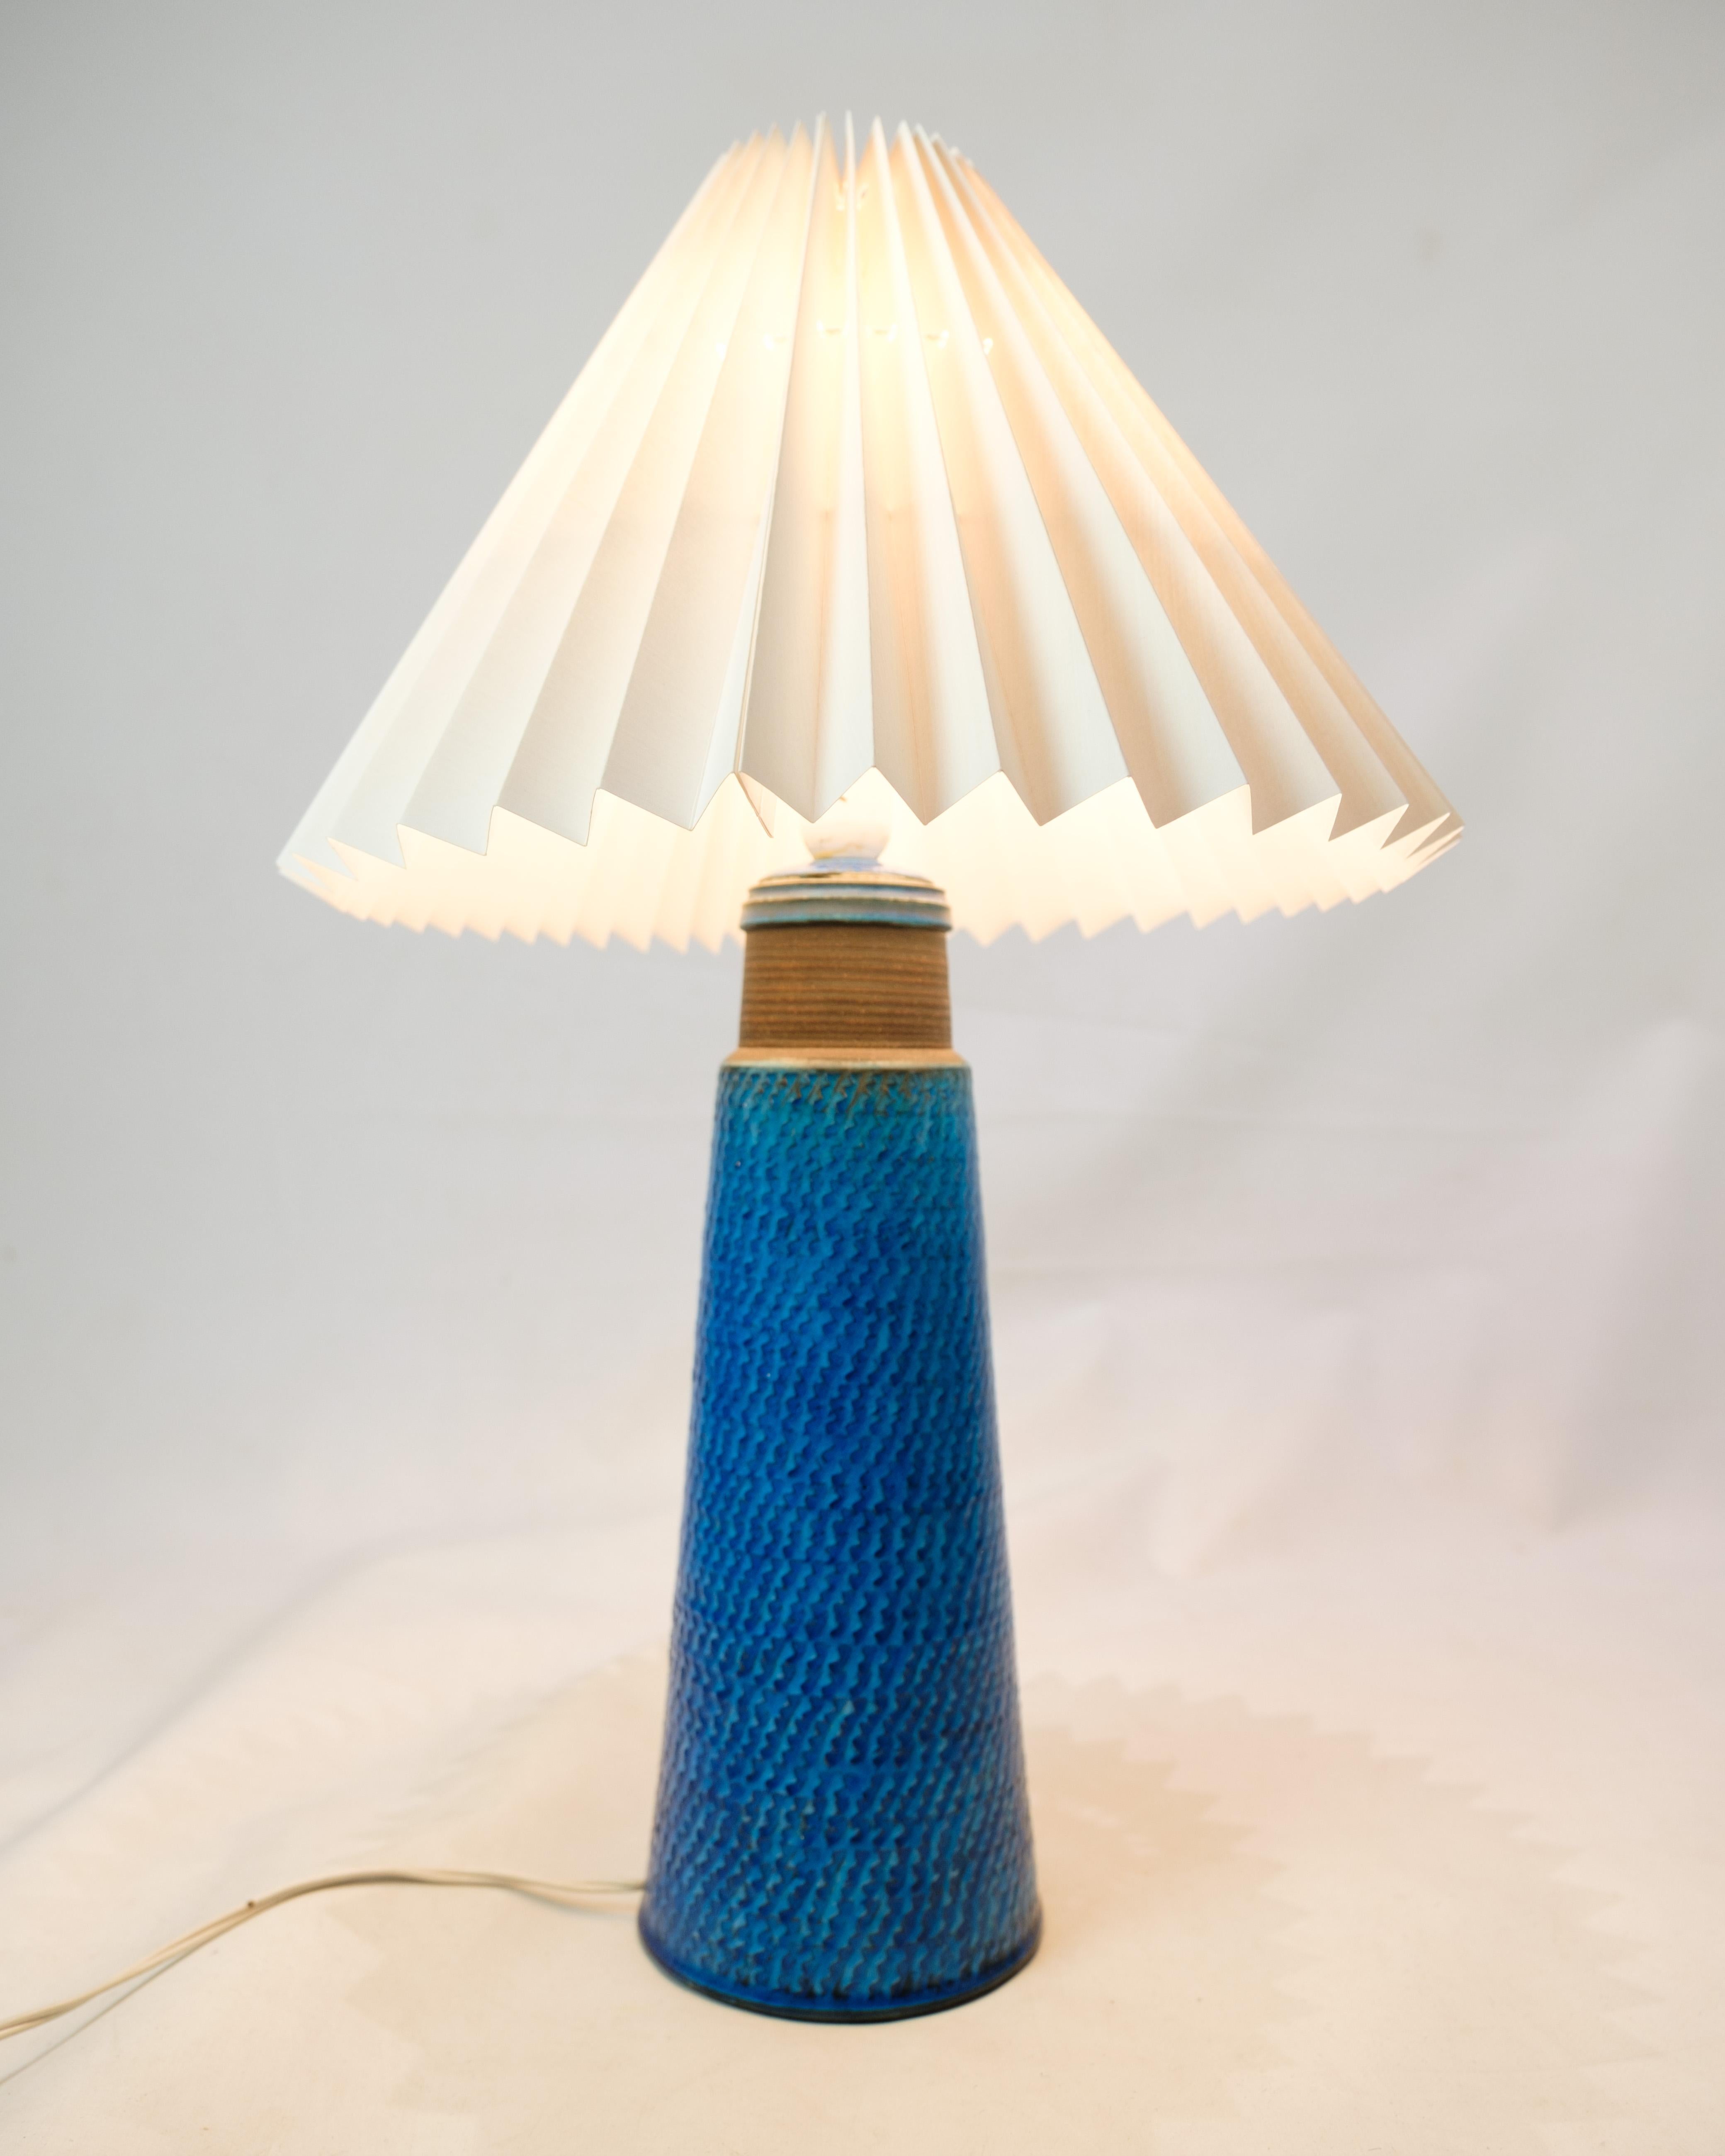 Cet ensemble de deux lampes de table est un exemple unique de la beauté du design, créé par Nils Kähler et produit par Herman A. Kähler. La couleur bleue et le motif à chevrons de la lampe lui confèrent une expression incomparable et charmante qui